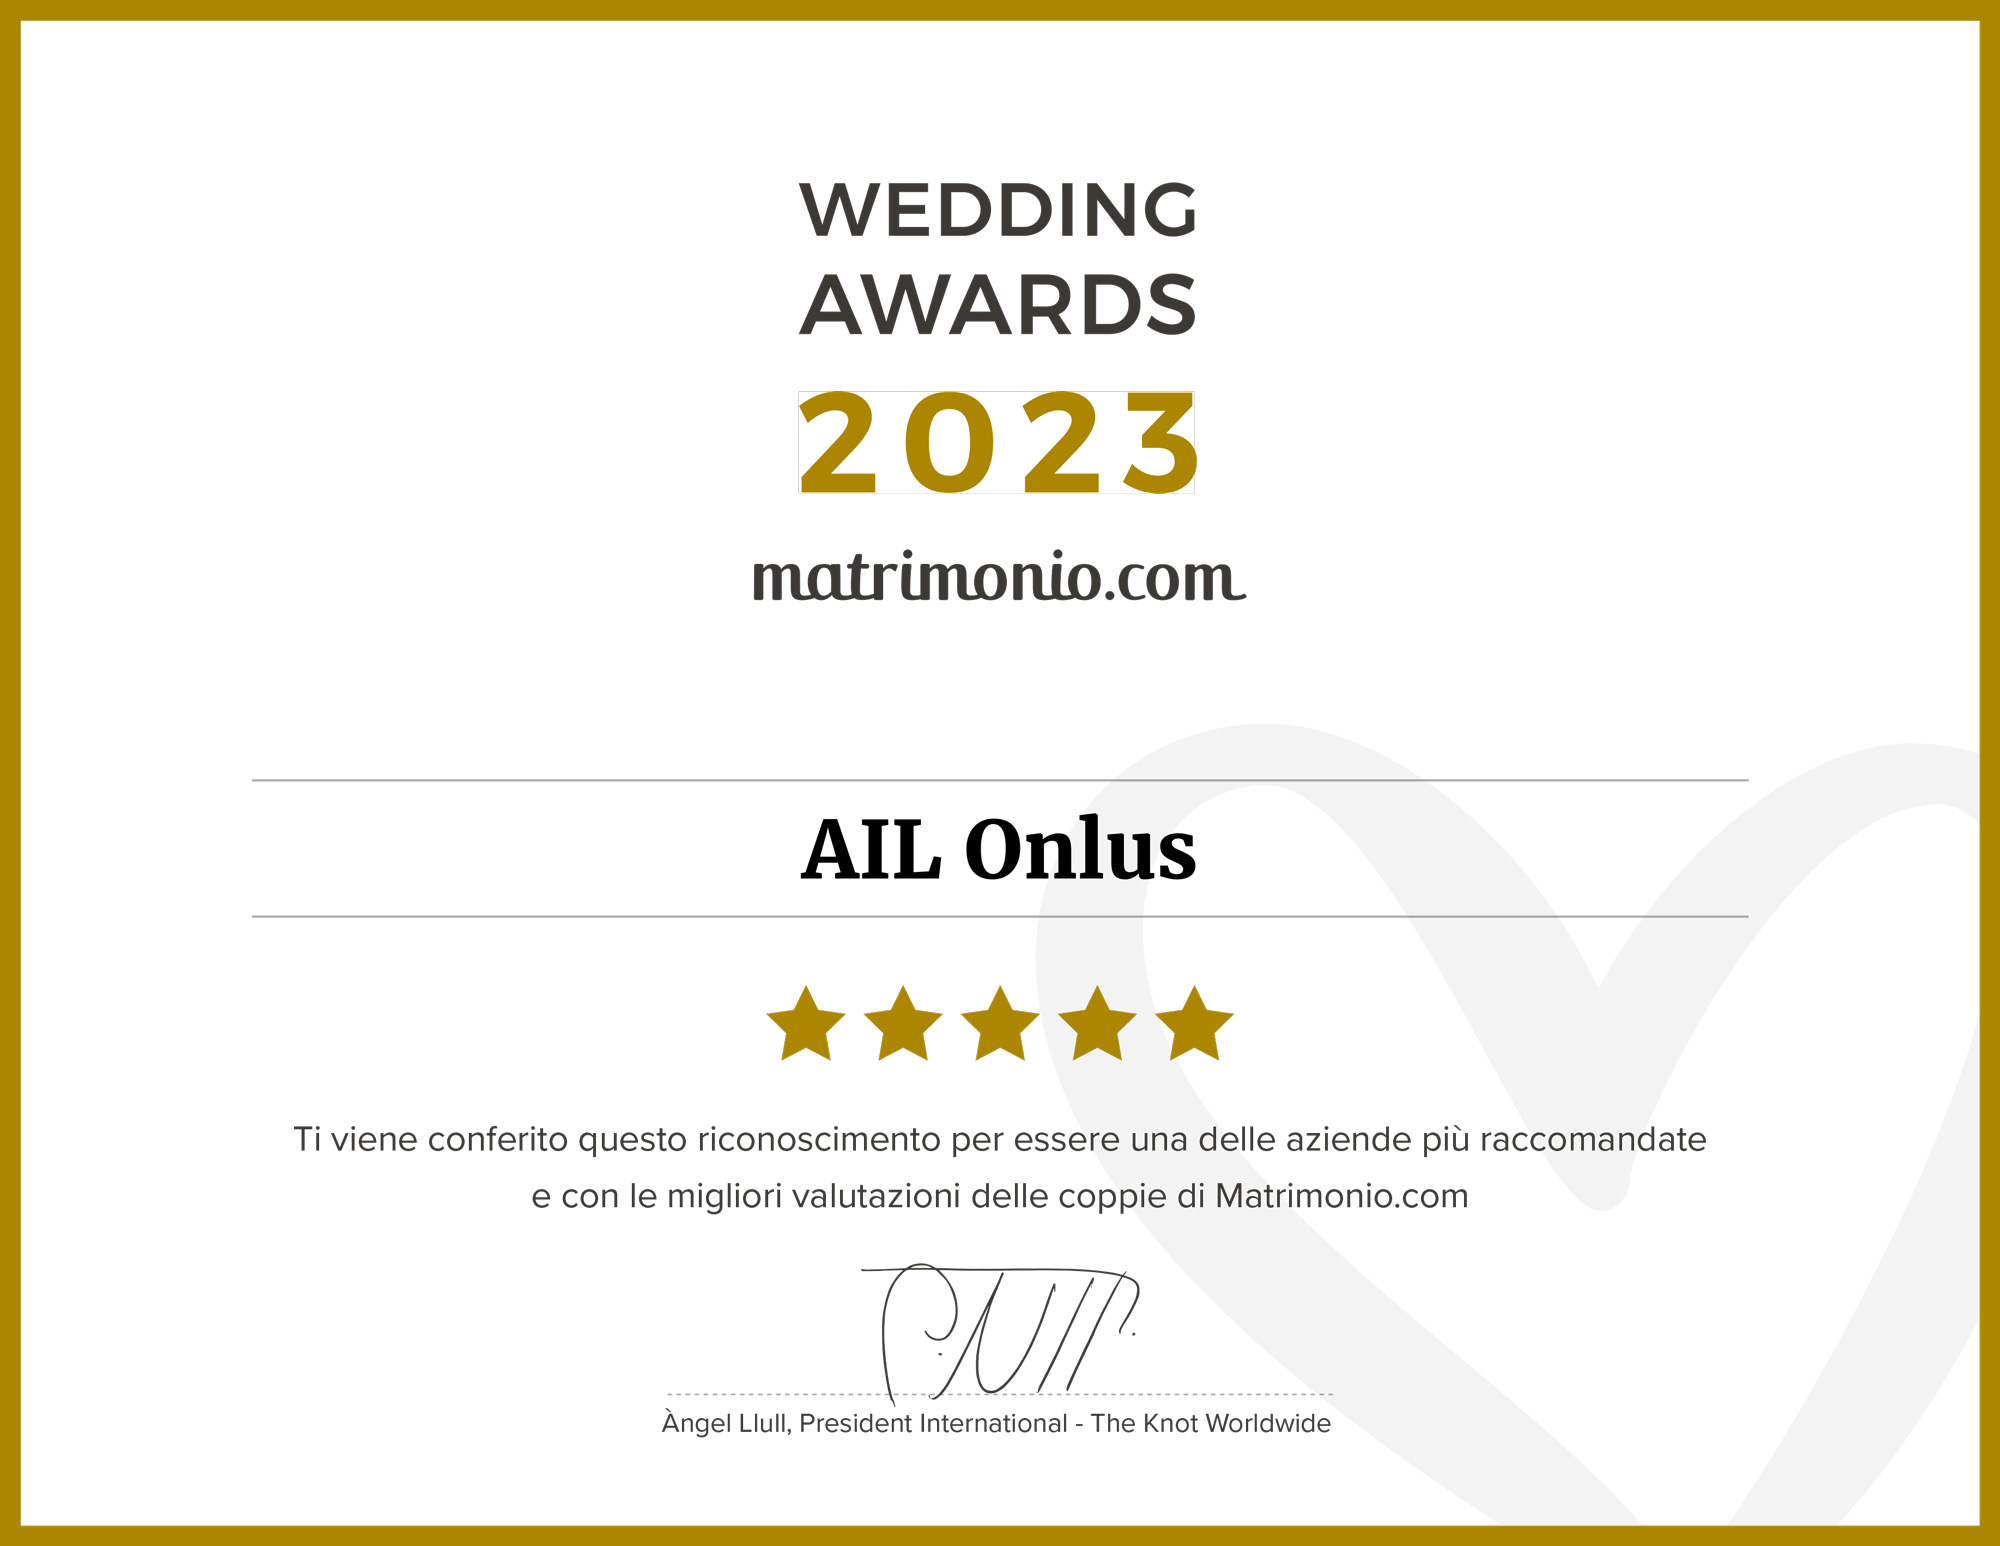 L'attestato del Wedding Awards ricevuto da Matrimonio.com